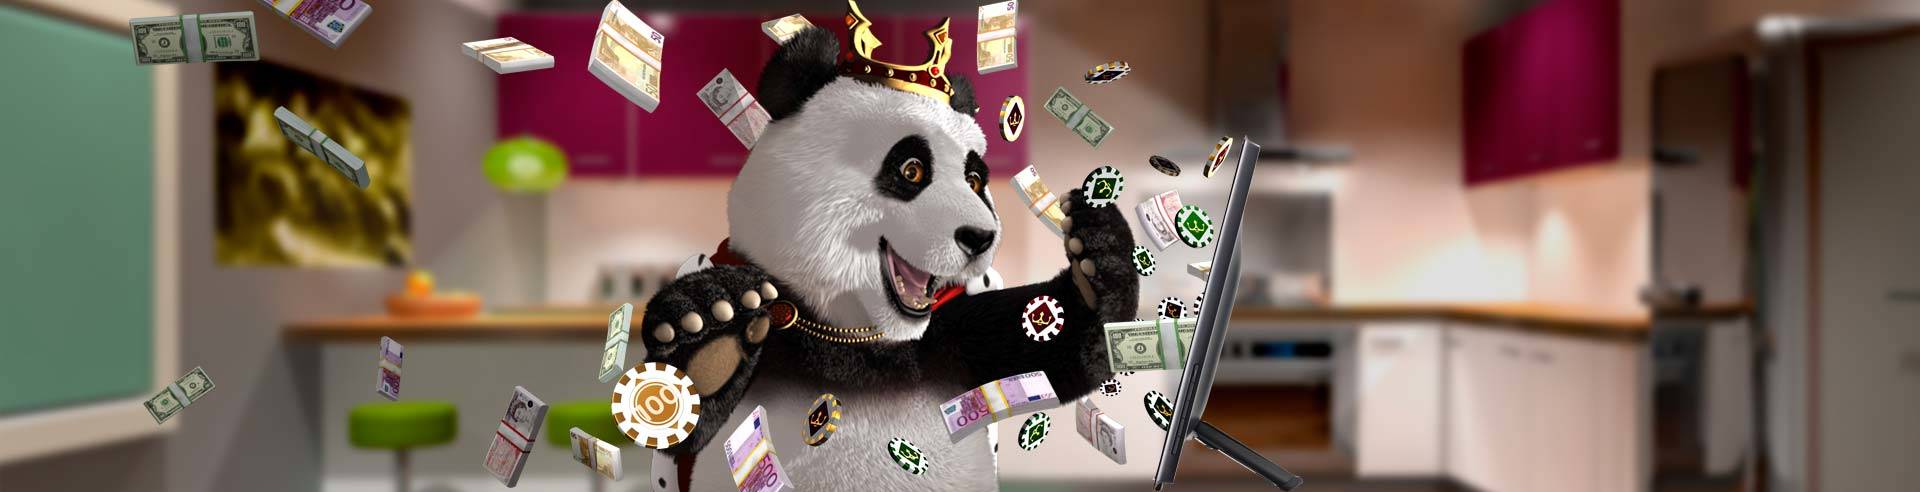 royal-panda-genesis-gaming-gokkasten